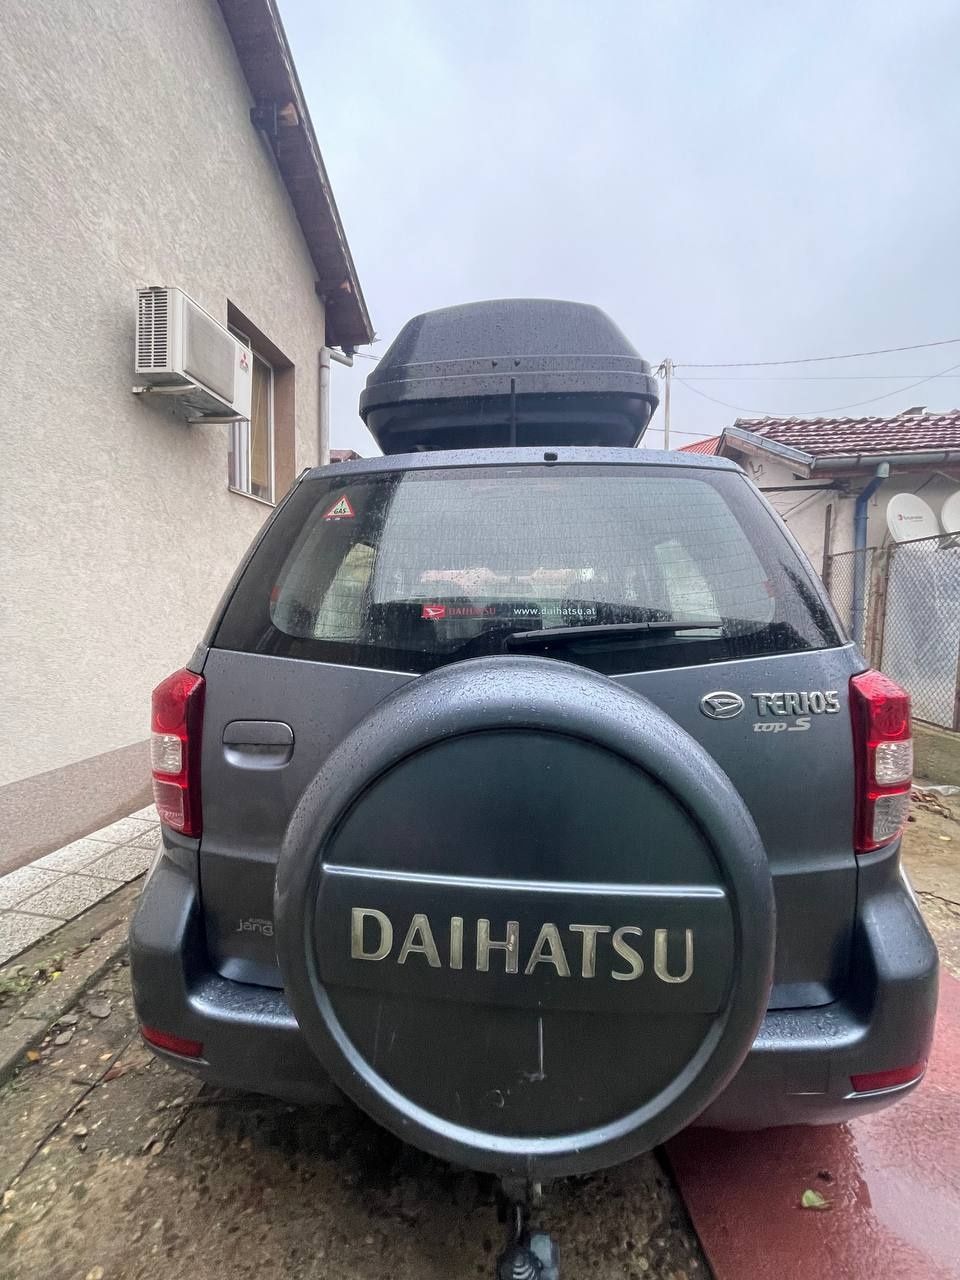 Daihatsu Terios 1.5 4x4 gaz